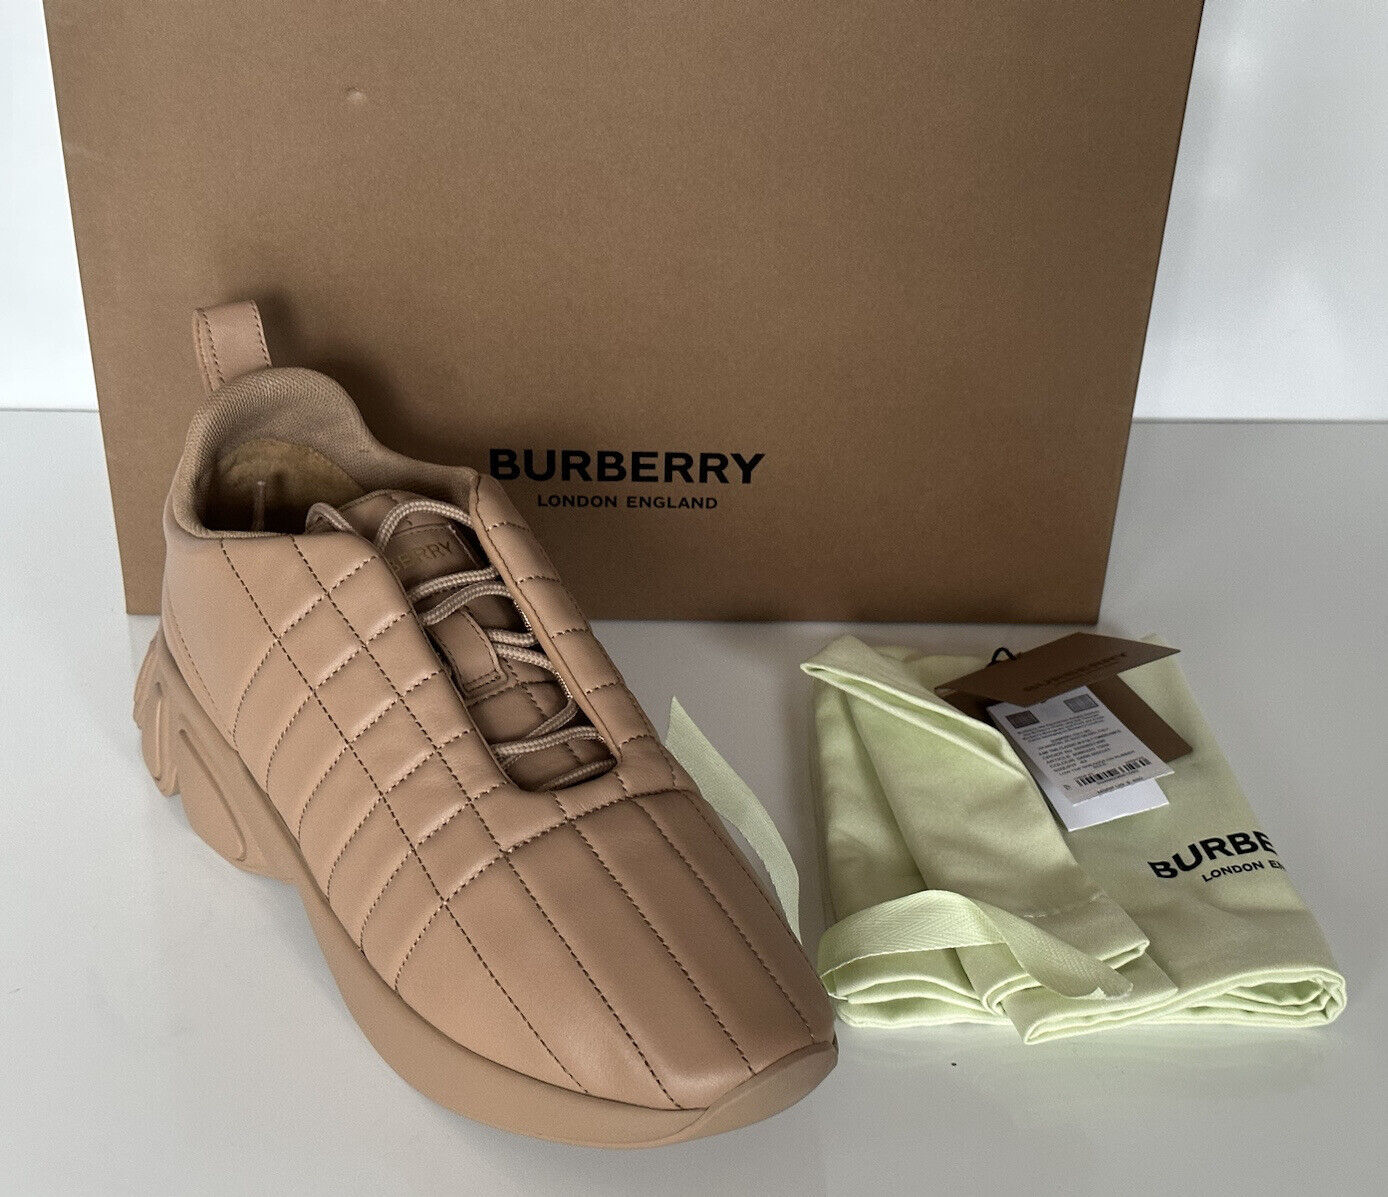 NIB $850 Burberry Стеганые кожаные кроссовки цвета бисквита 11 США (44 ЕС) 8060225 IT 